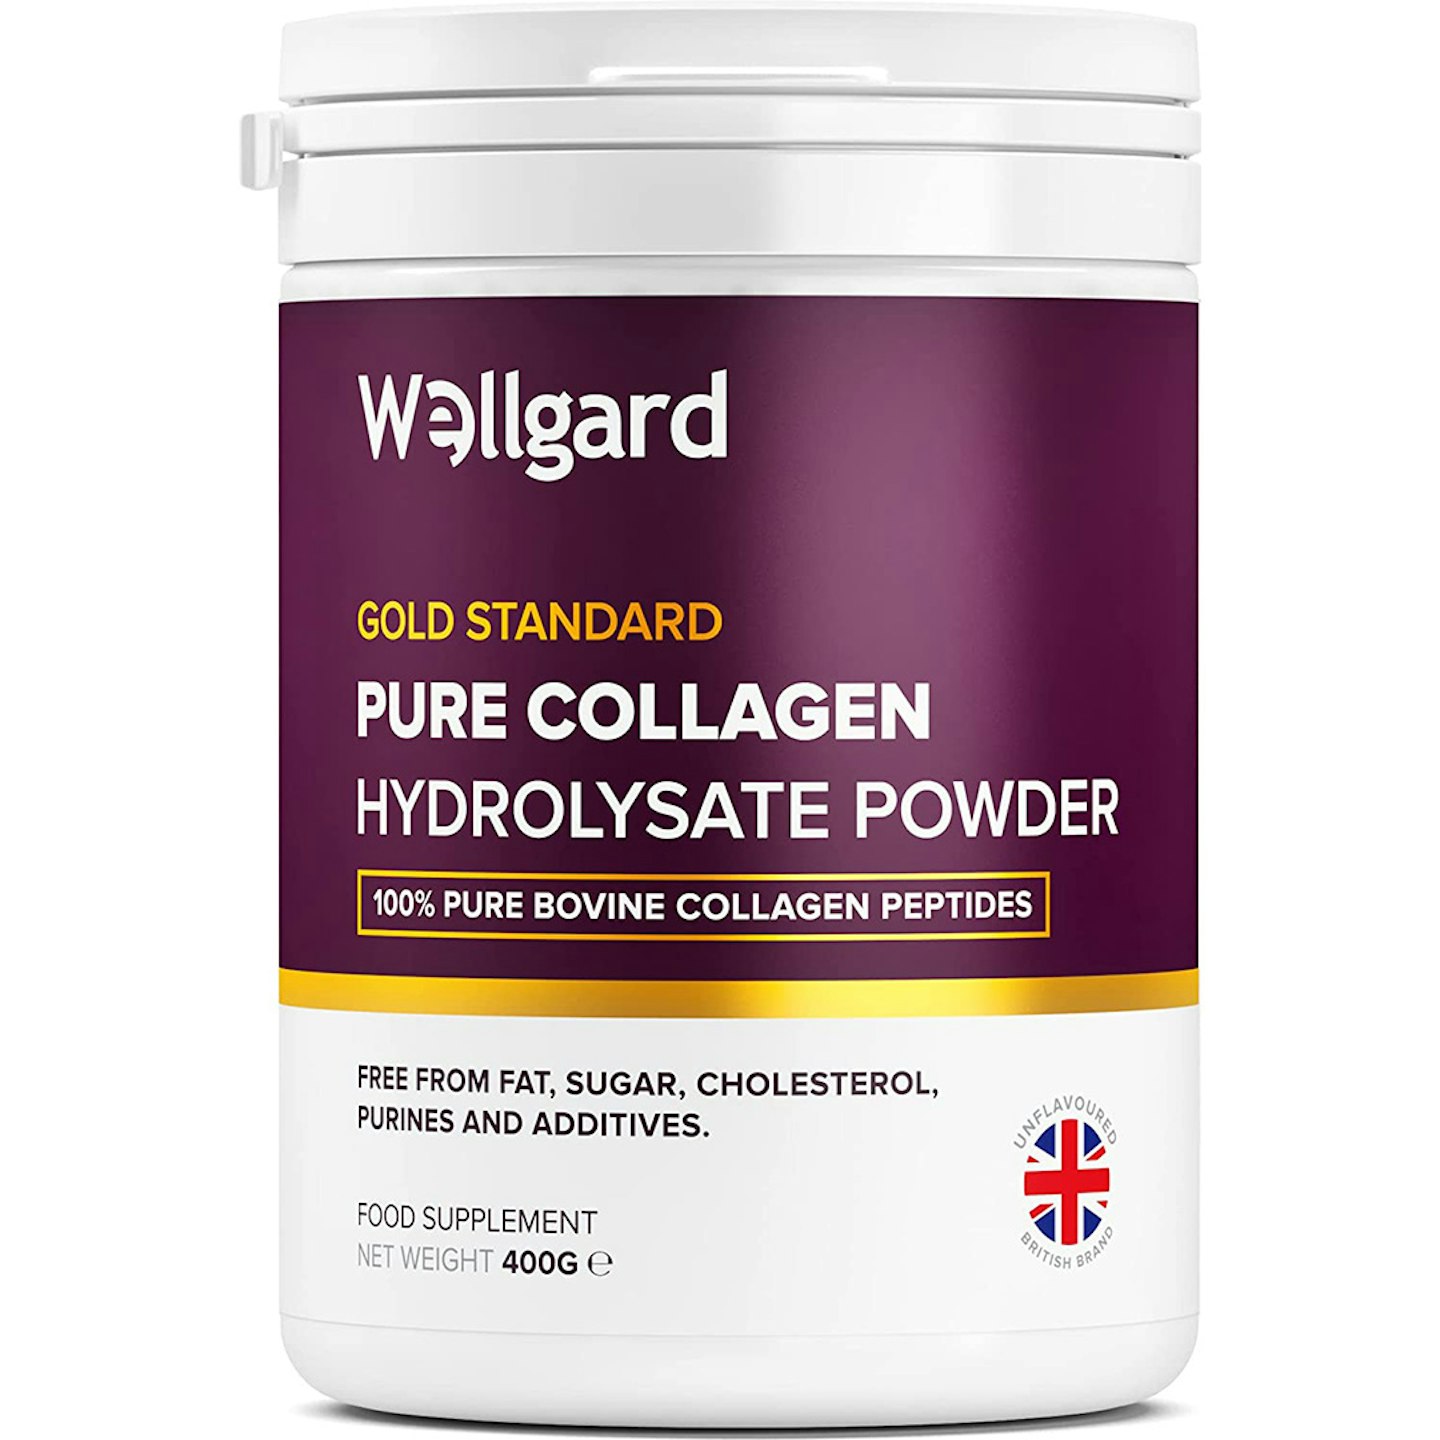 Gold Standard Bovine Collagen Peptides Powder by Wellgard